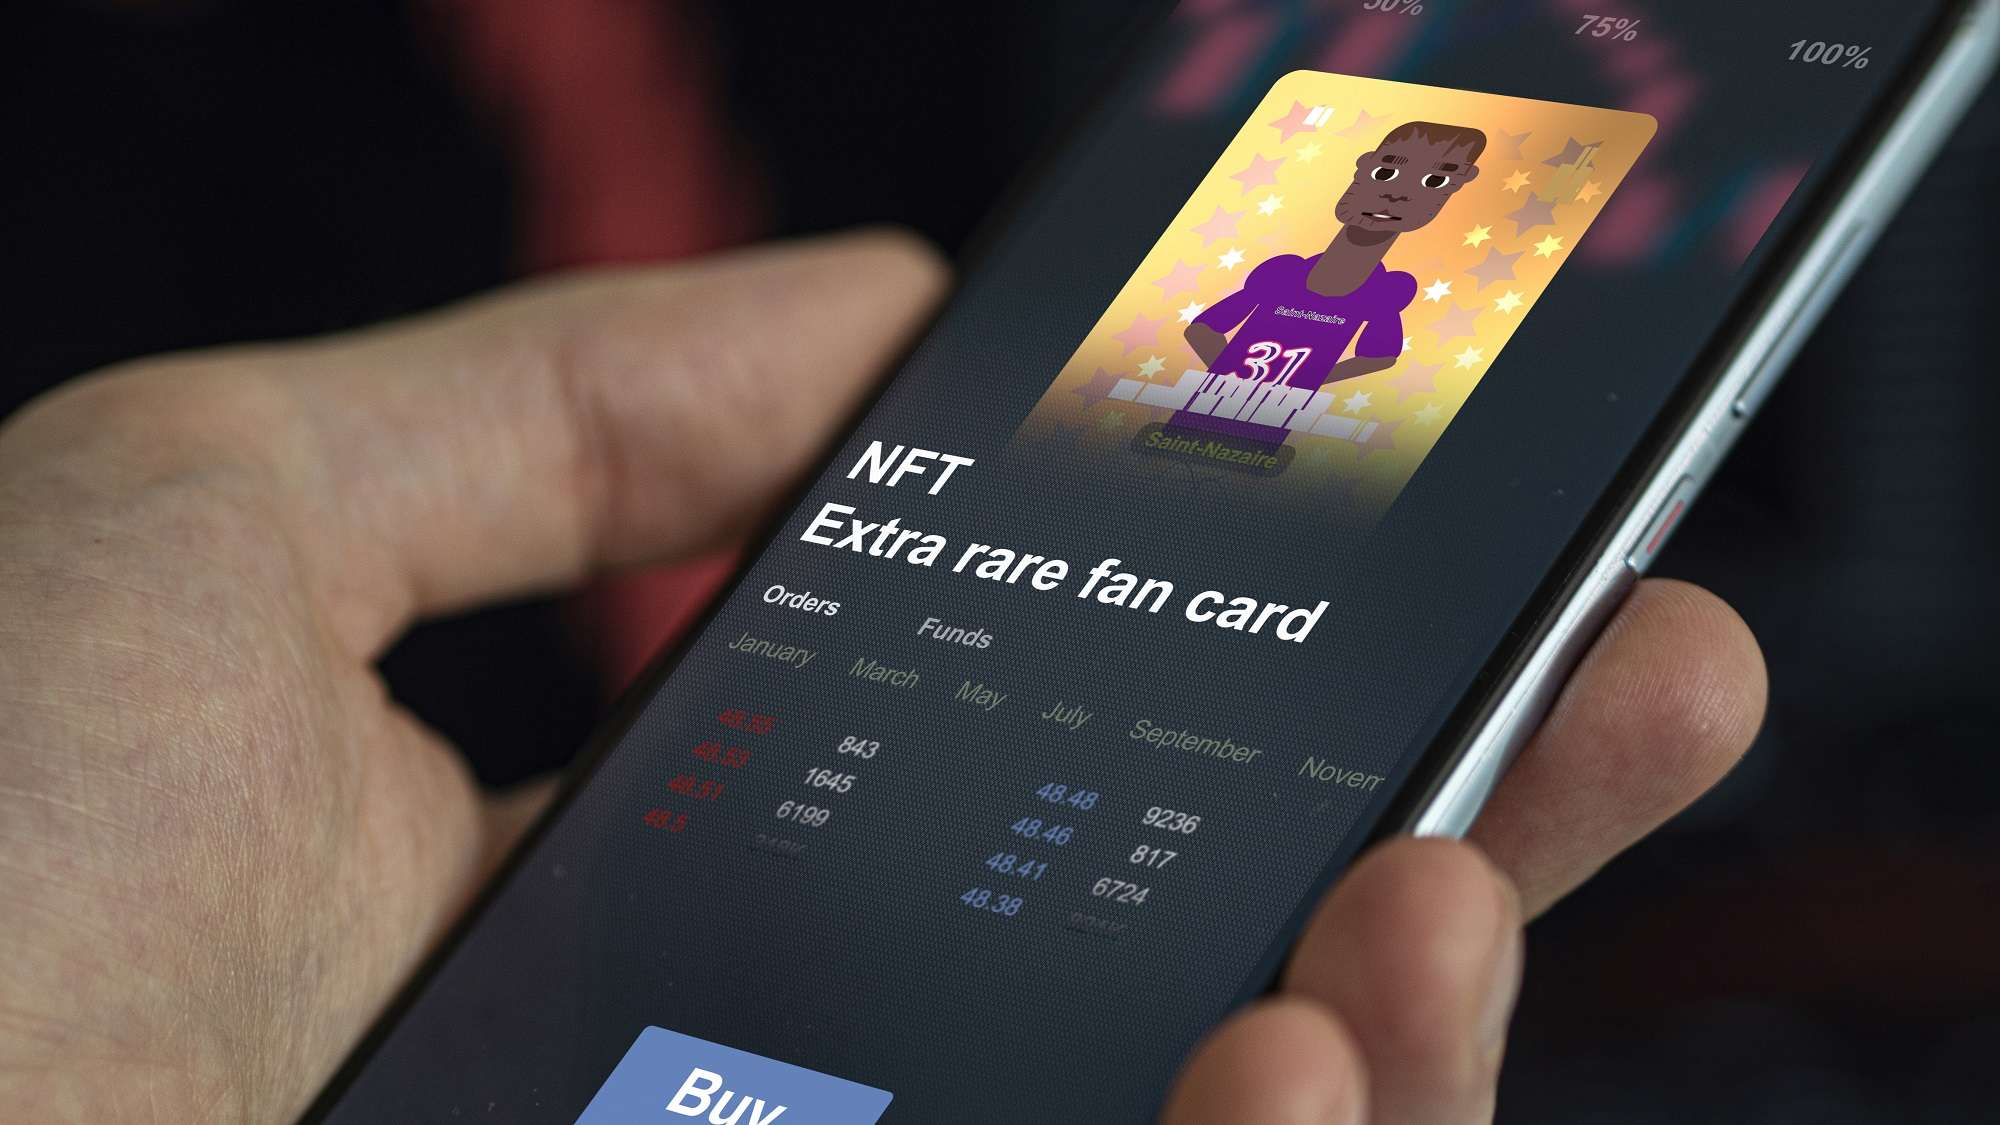 Пользователь смартфона держит устройство с изображением спортсмена. Под изображением появляется текст «Экстра редкая фан-карта NFT» вместе с кнопкой «Купить.